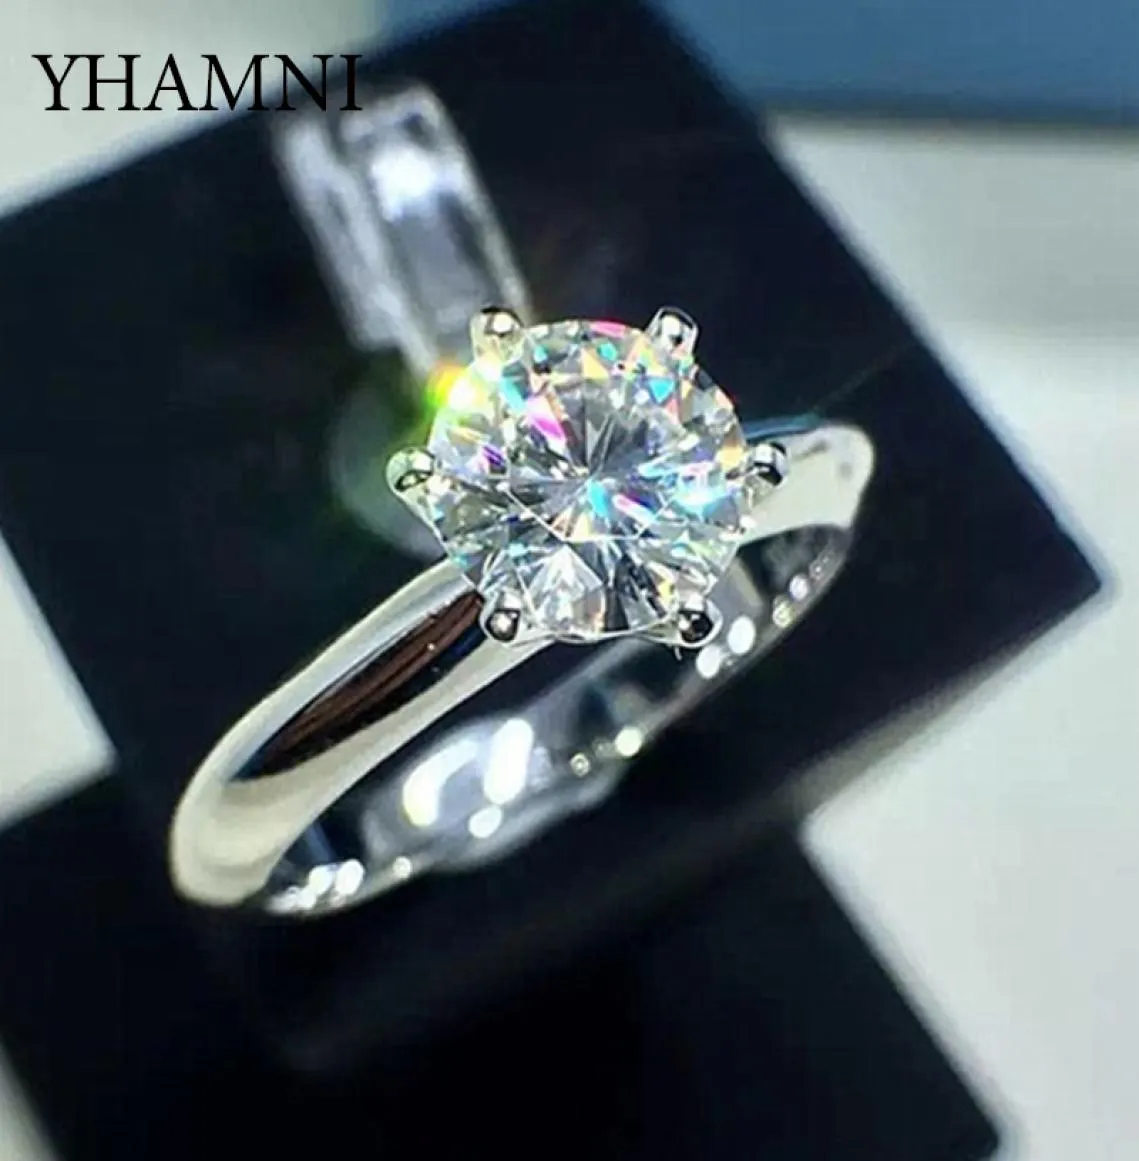 Luksusowy klasyczny 1 karat laboratoryjny pierścień diamentowy 18krgp biały złoto PT Wedding zaręczynowy biżuteria dla kobiet prezent 6268581